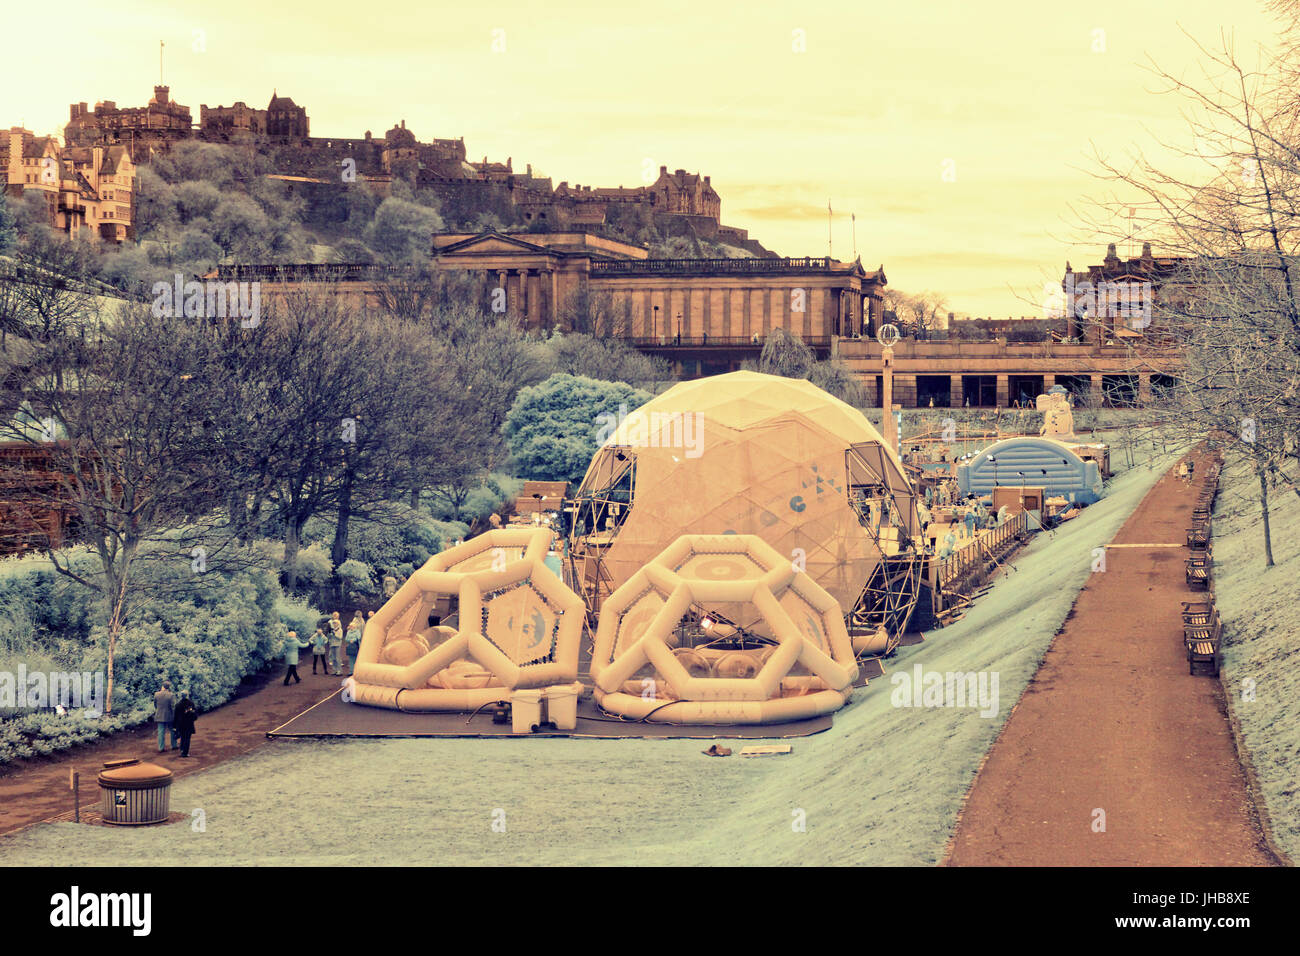 Edimburgo, Reino Unido planos de cámara de infrarrojos del castillo de estilo gótico con la feria de Navidad de Princes Street Gardens infrarrojos Foto de stock